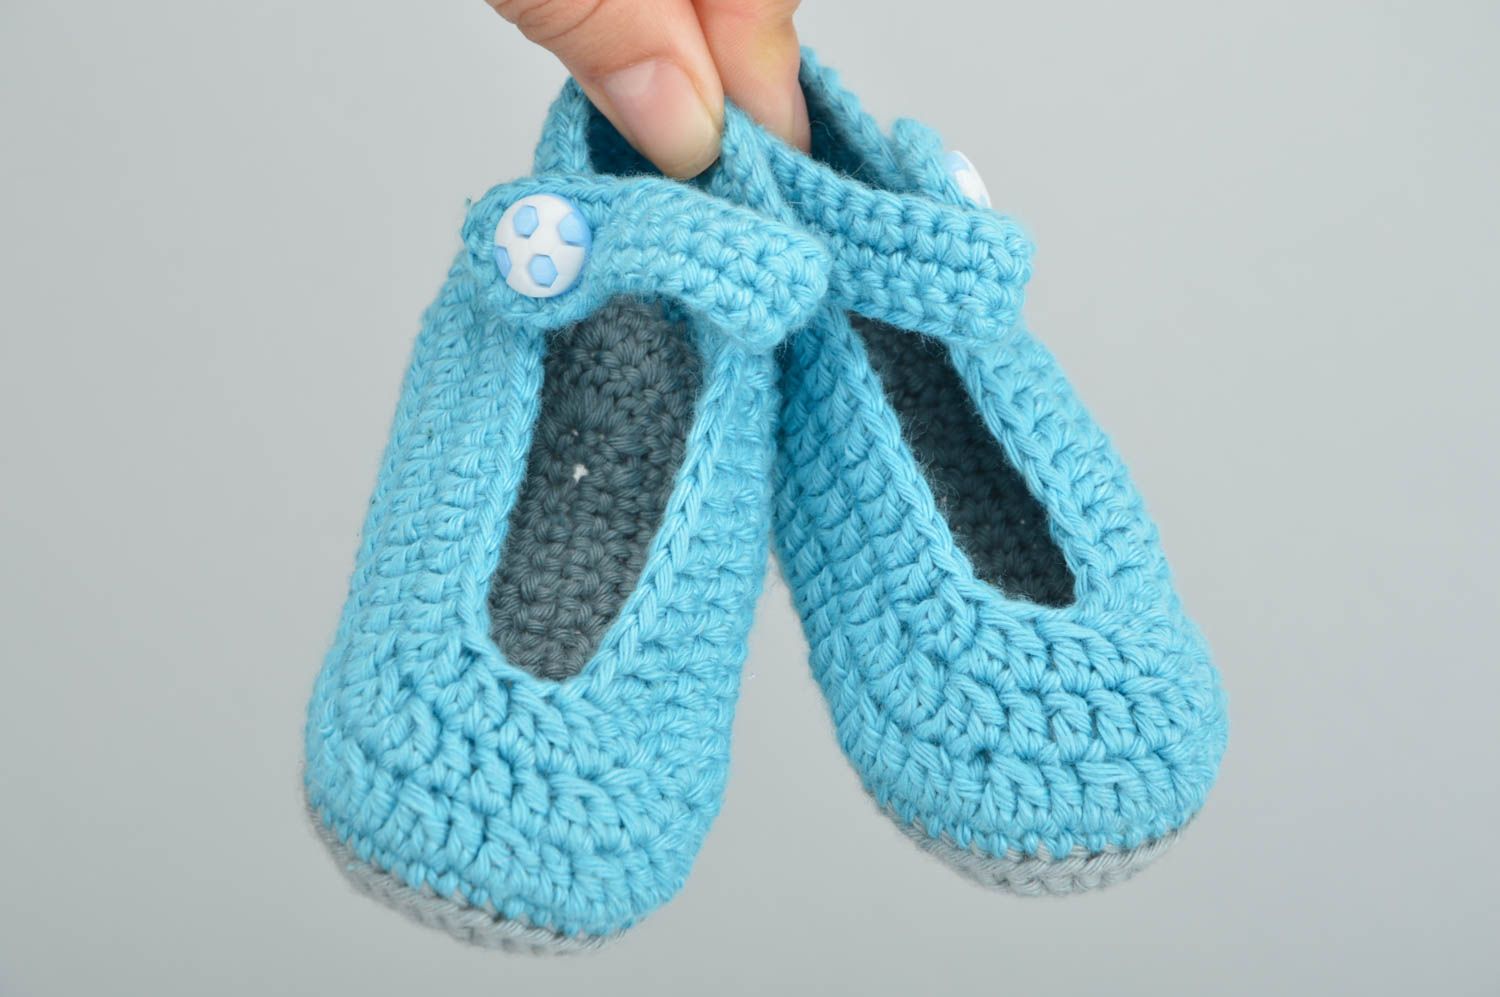 Chaussons pour bébé bleu ciel en coton naturel faits main originaux jolis photo 3